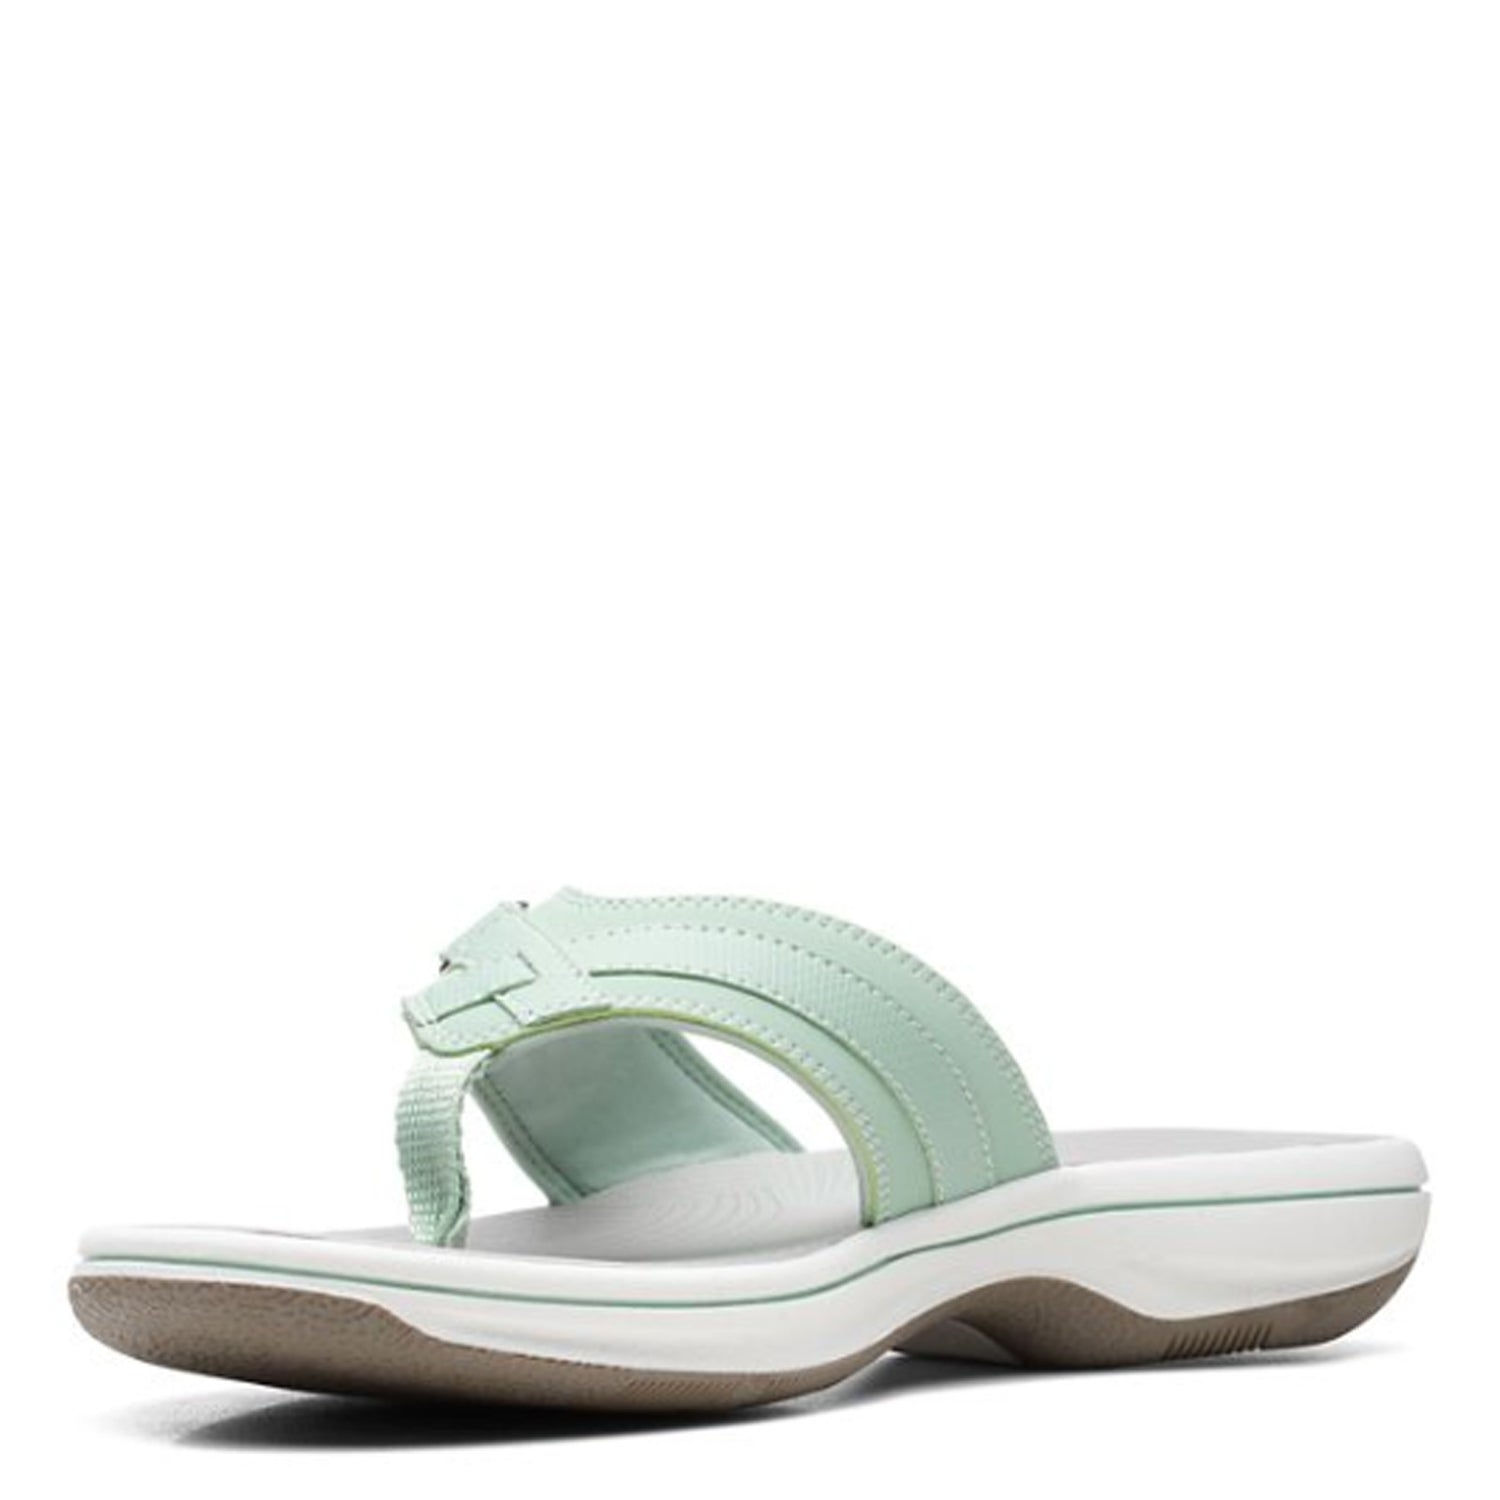 Peltz Shoes  Women's Clarks Breeze Sea Sandal GREEN 26169816